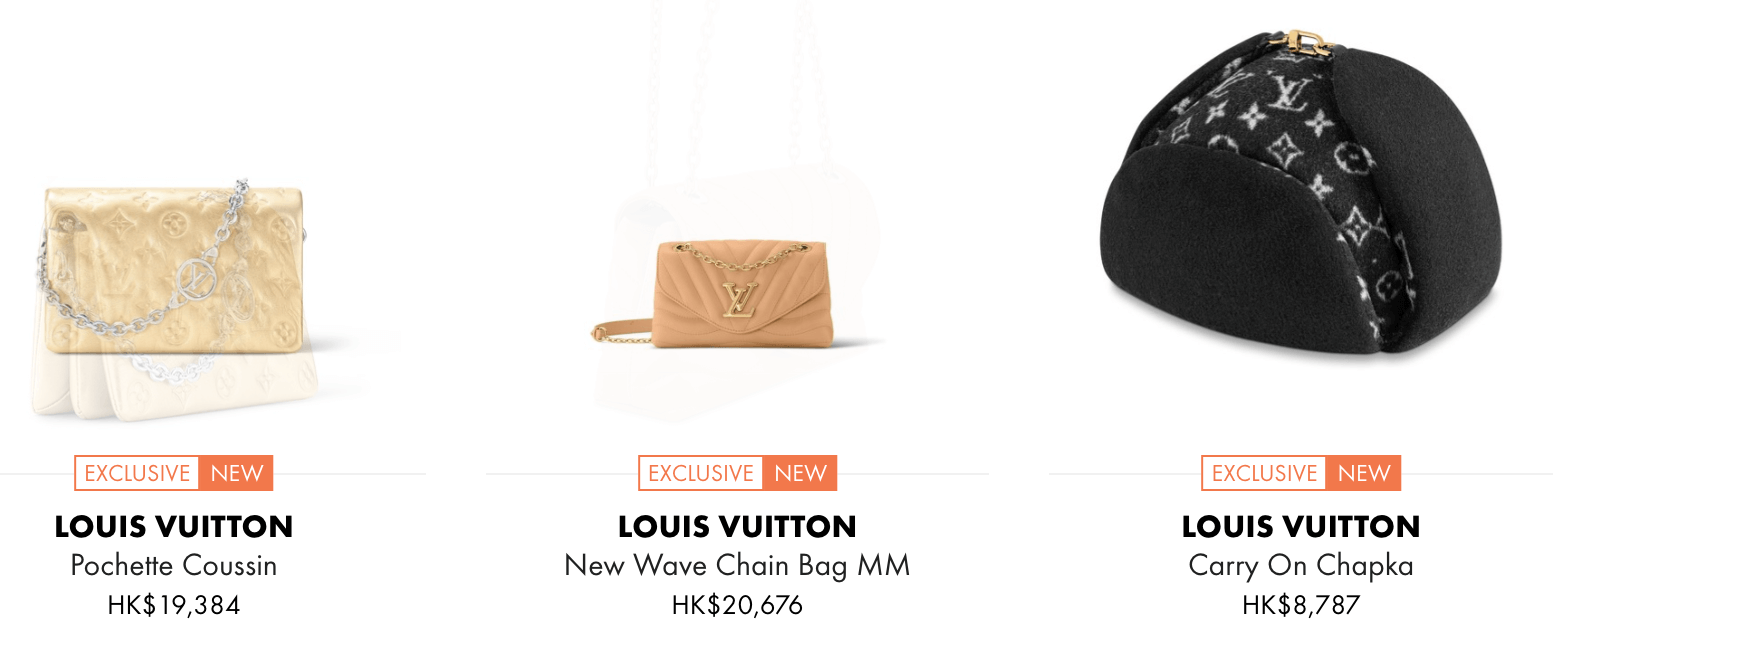 驚喜價！24S名牌網限時9折！Louis Vuitton 精選熱賣袋款低至香港售價72折！